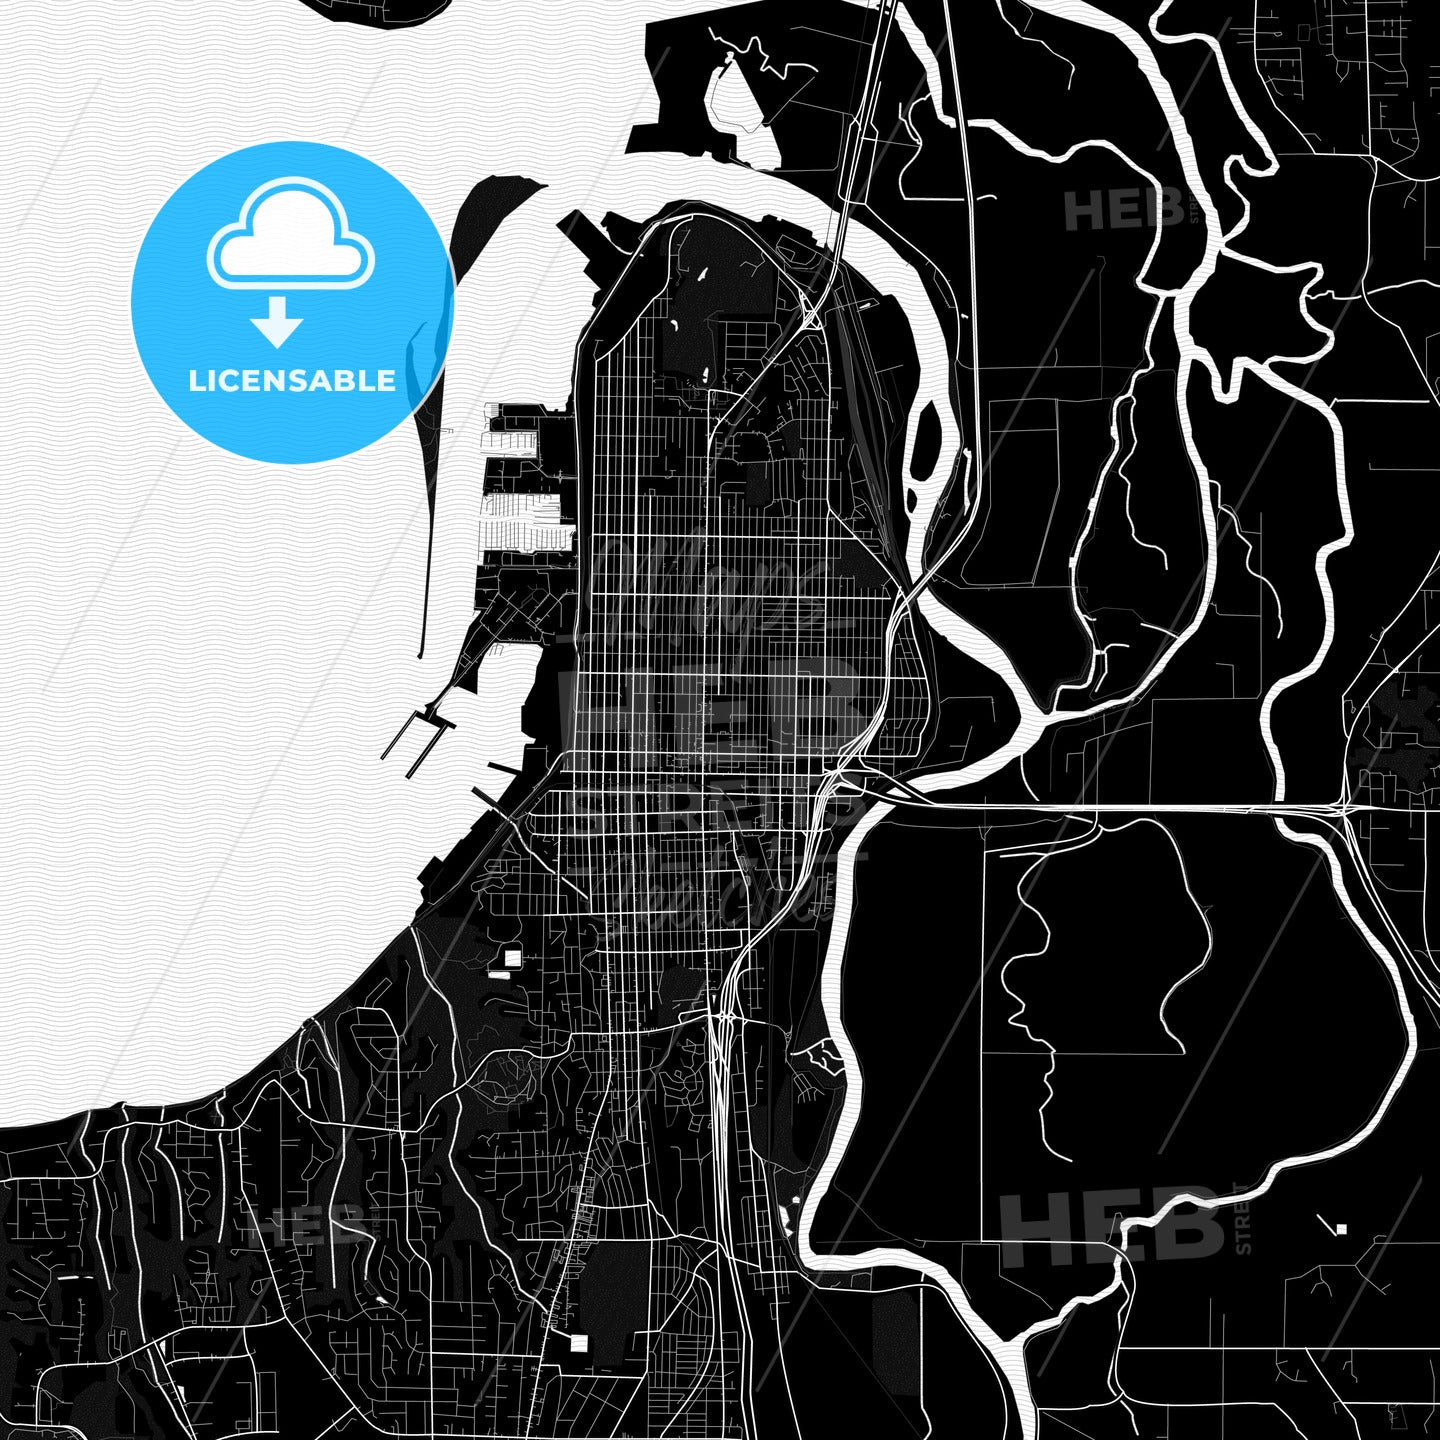 Everett, Washington, United States, PDF map